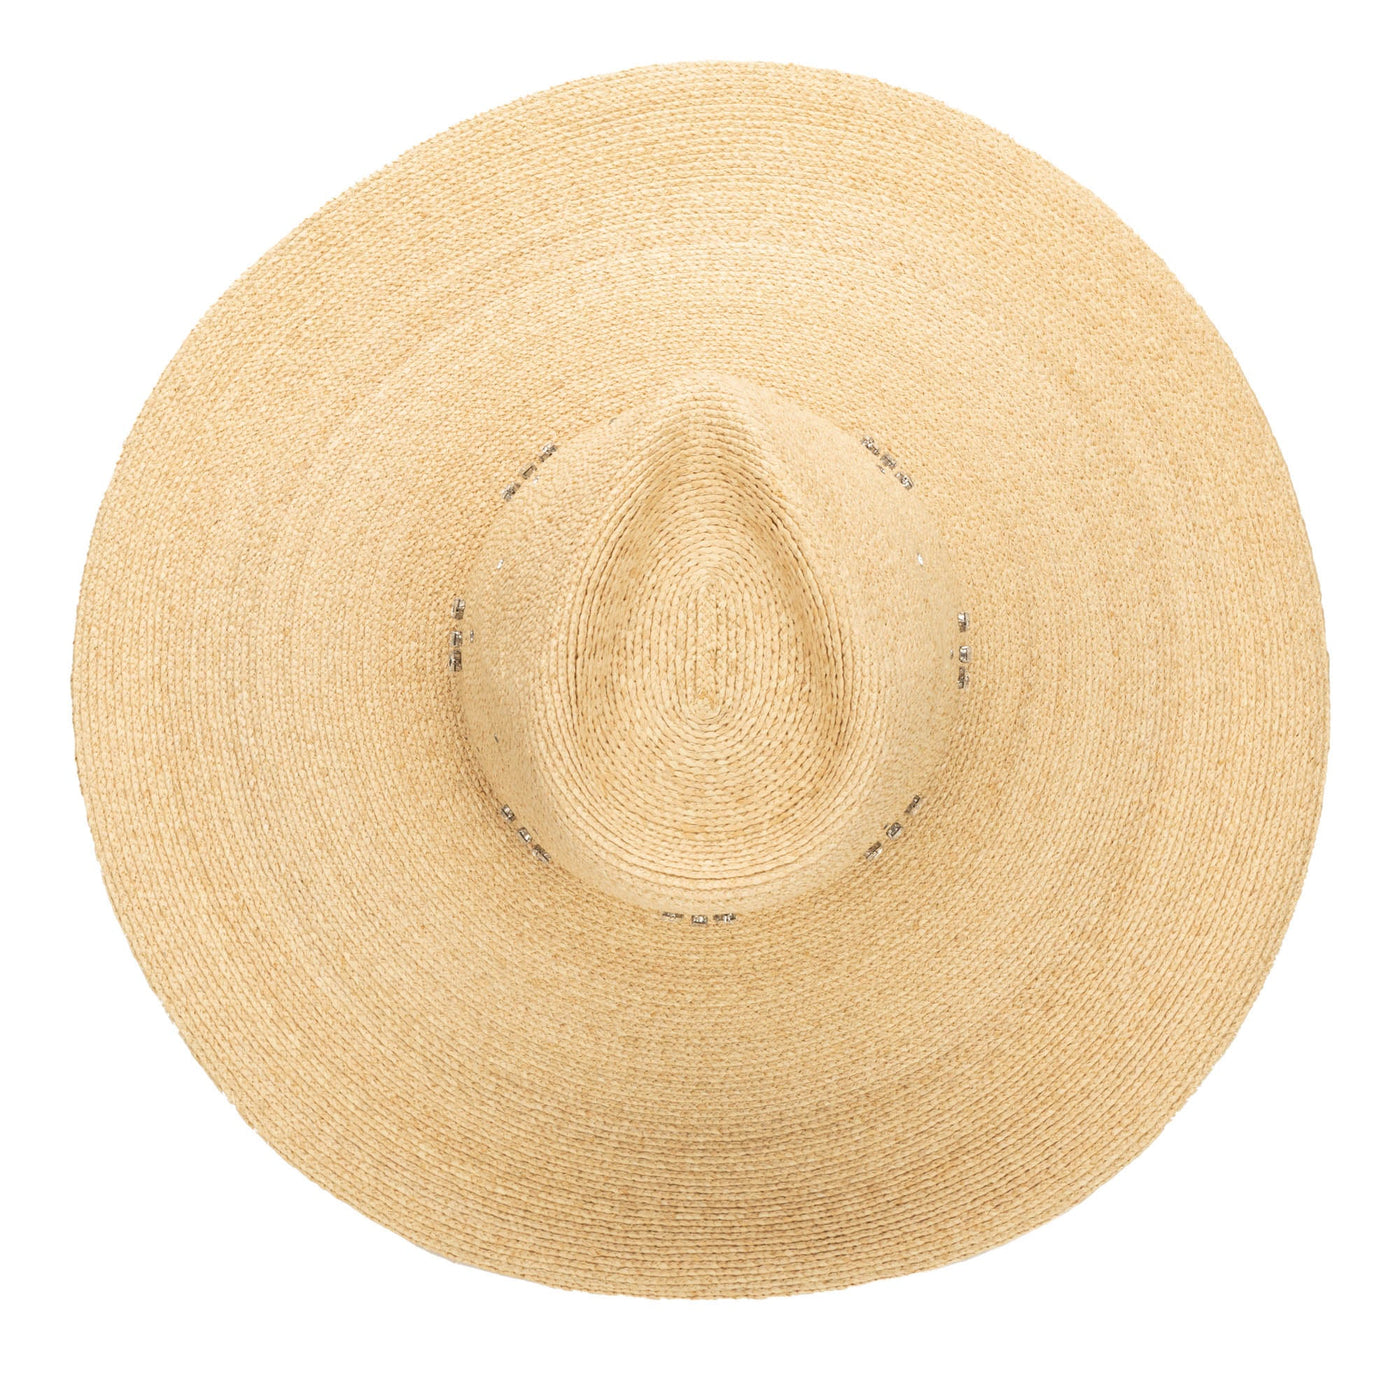 Glitz Wide Brim Fedora Sun Hat (RHL6571)-FEDORA-San Diego Hat Company